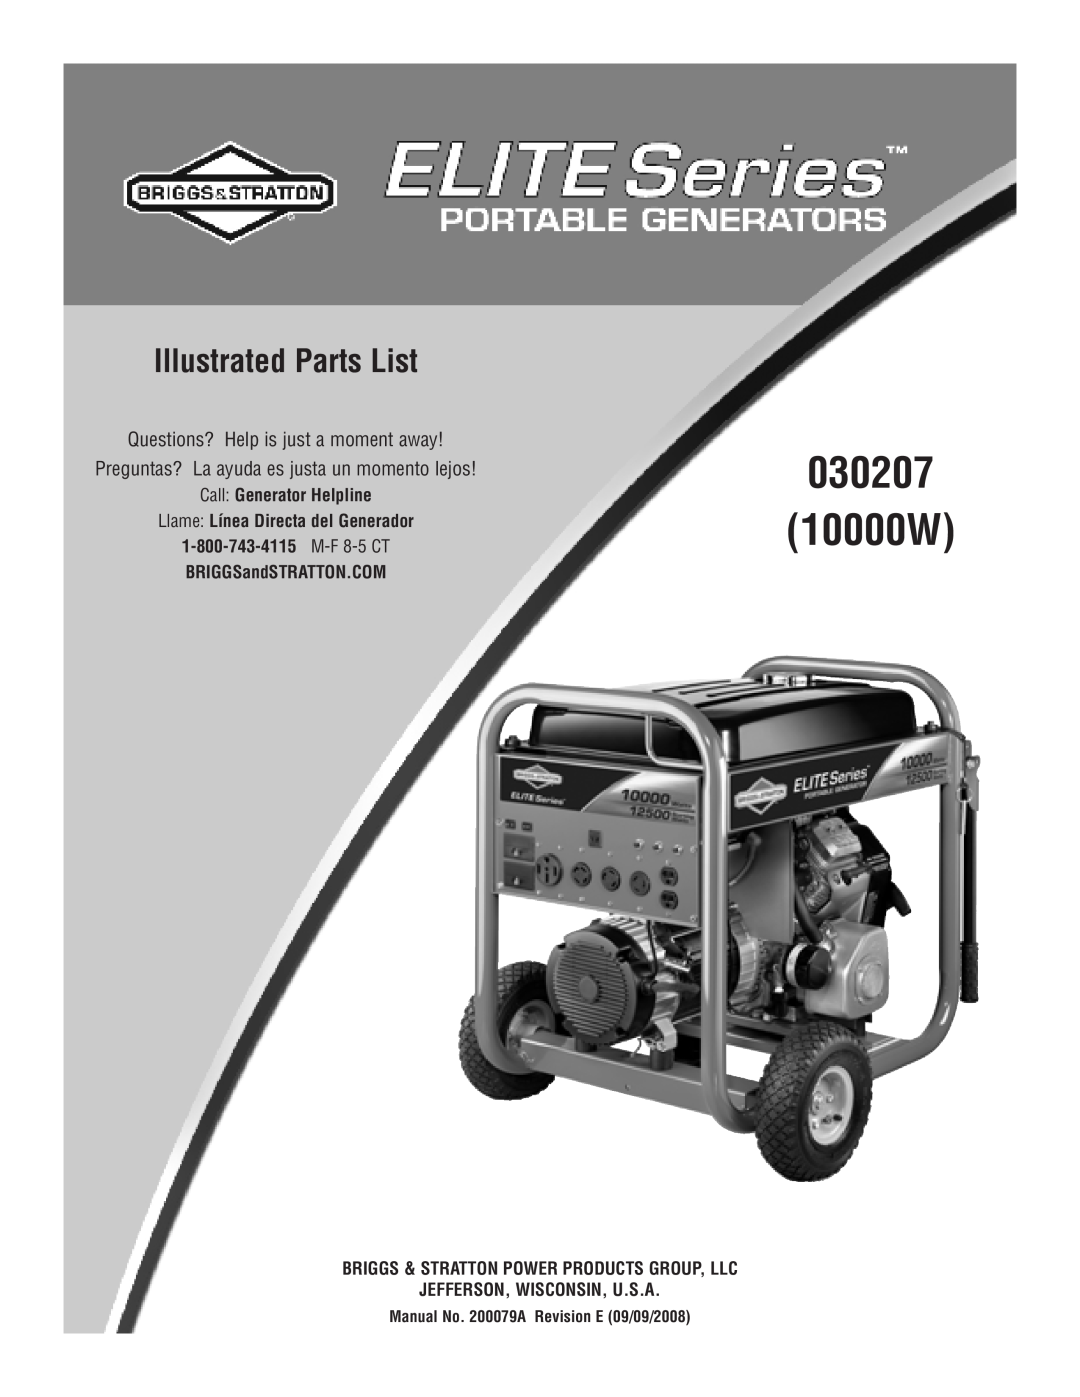 Briggs & Stratton 30207 manual Illustrated Parts List, Call Generator Helpline, Llame Línea Directa del Generador 